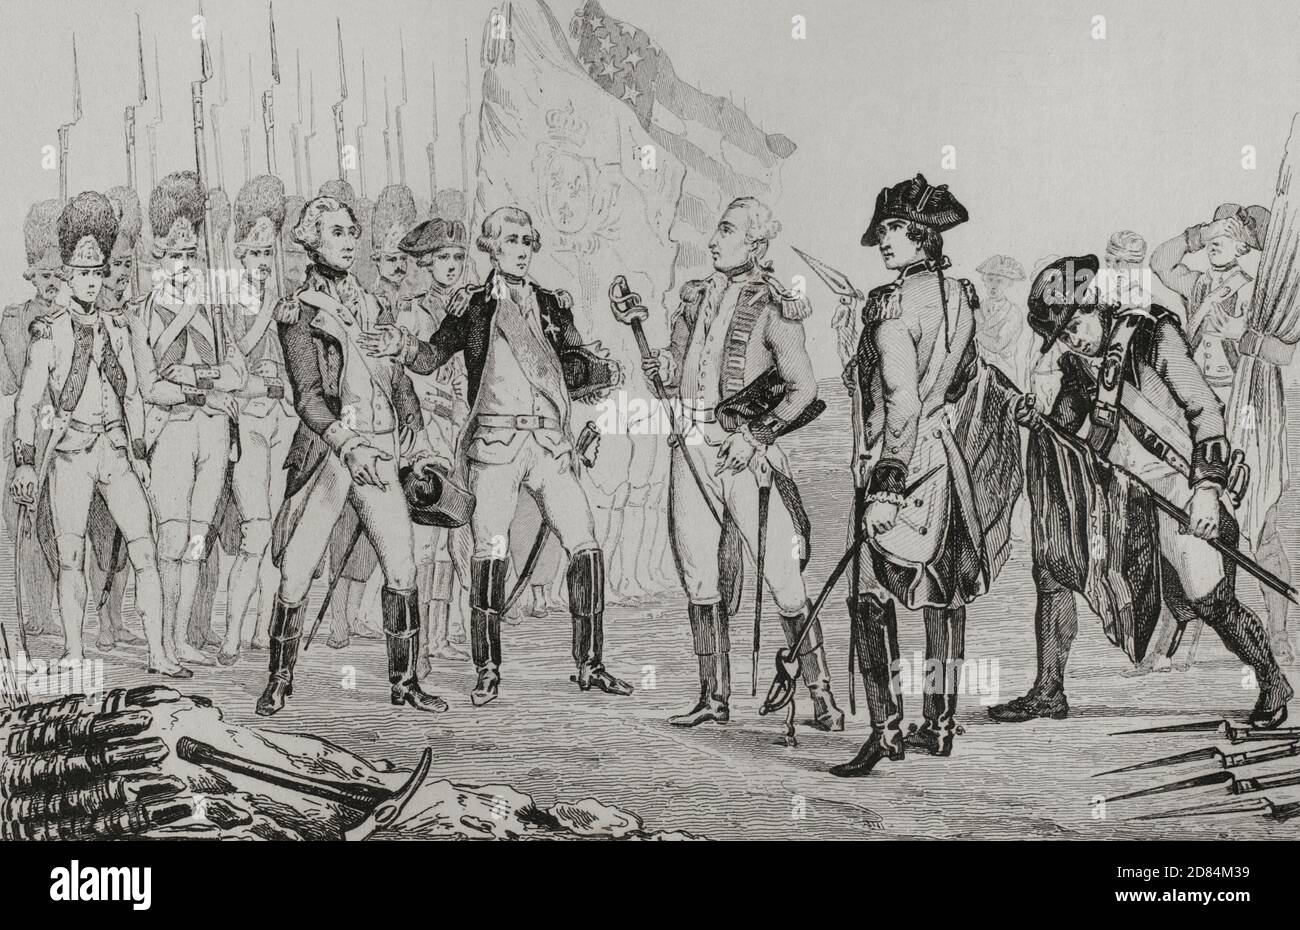 Unabhängigkeitskrieg der Vereinigten Staaten von Amerika. Der britische General Cornwallis (1738-1805) kapituliert nach der Schlacht von Yorktown, Virginia, am 19. Oktober 1781. Die amerikanische Armee besiegte die Briten. General Cornwallis gab seine Truppen ab. Cornwallis, der die Krankheit anflehte, nahm nicht an der Kapitulation Teil, aber sein zweiter Befehlshaber, General Charles O’Hara, trug das Schwert von Cornwallis zu den amerikanischen und französischen Kommandanten. Gravur von Vernier. Panorama Universal. Geschichte der Vereinigten Staaten von Amerika, ab 1. Auflage von Jean B.G. Roux de Rochelle's Etats-Unis d'Amérique im Jahr 1837. Spanische Ausgabe Stockfoto